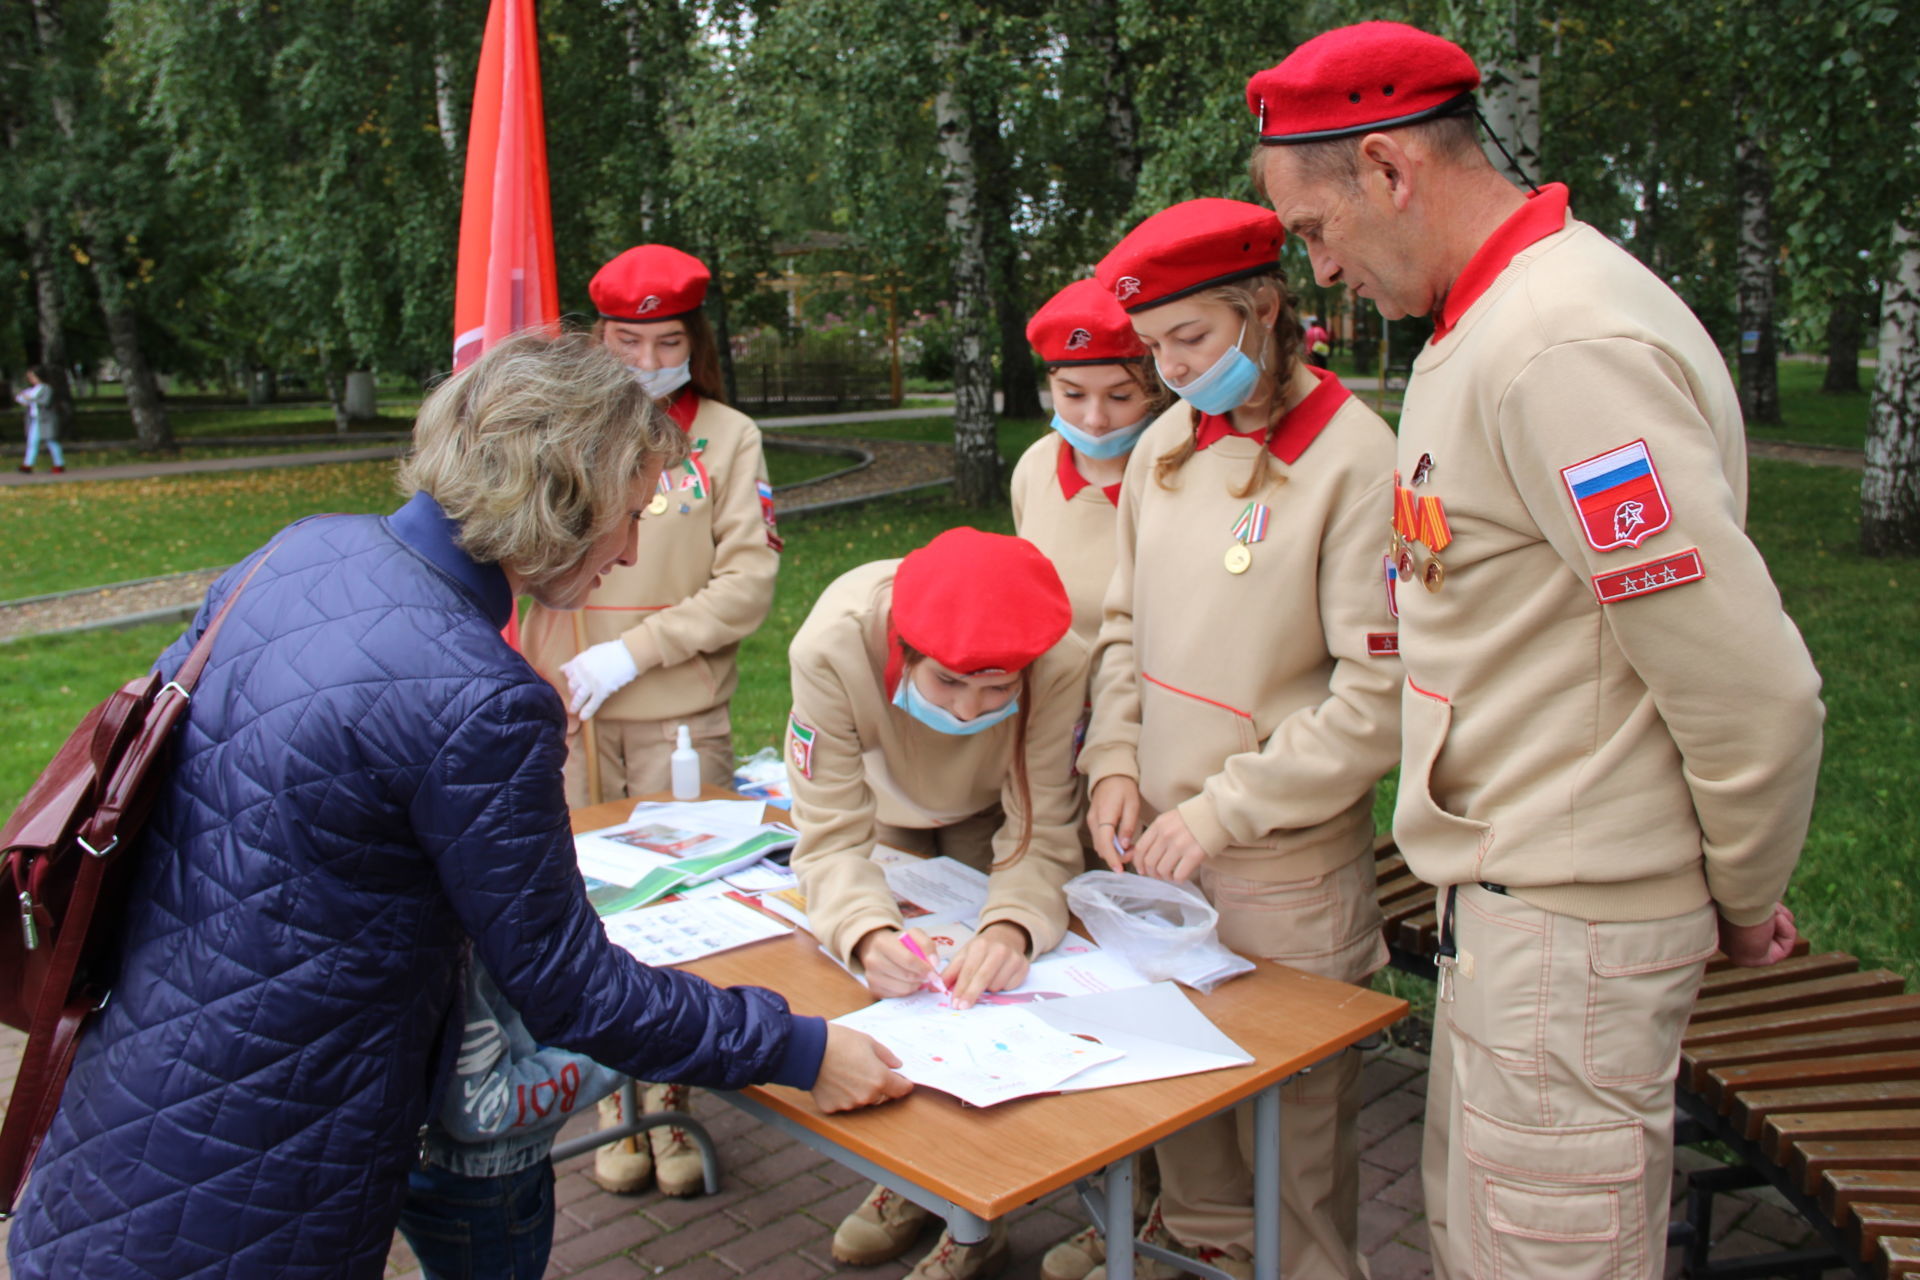 В Тетюшах прошли торжественные мероприятия, посвященные Дню Республики Татарстан и 100-летию ТАССР